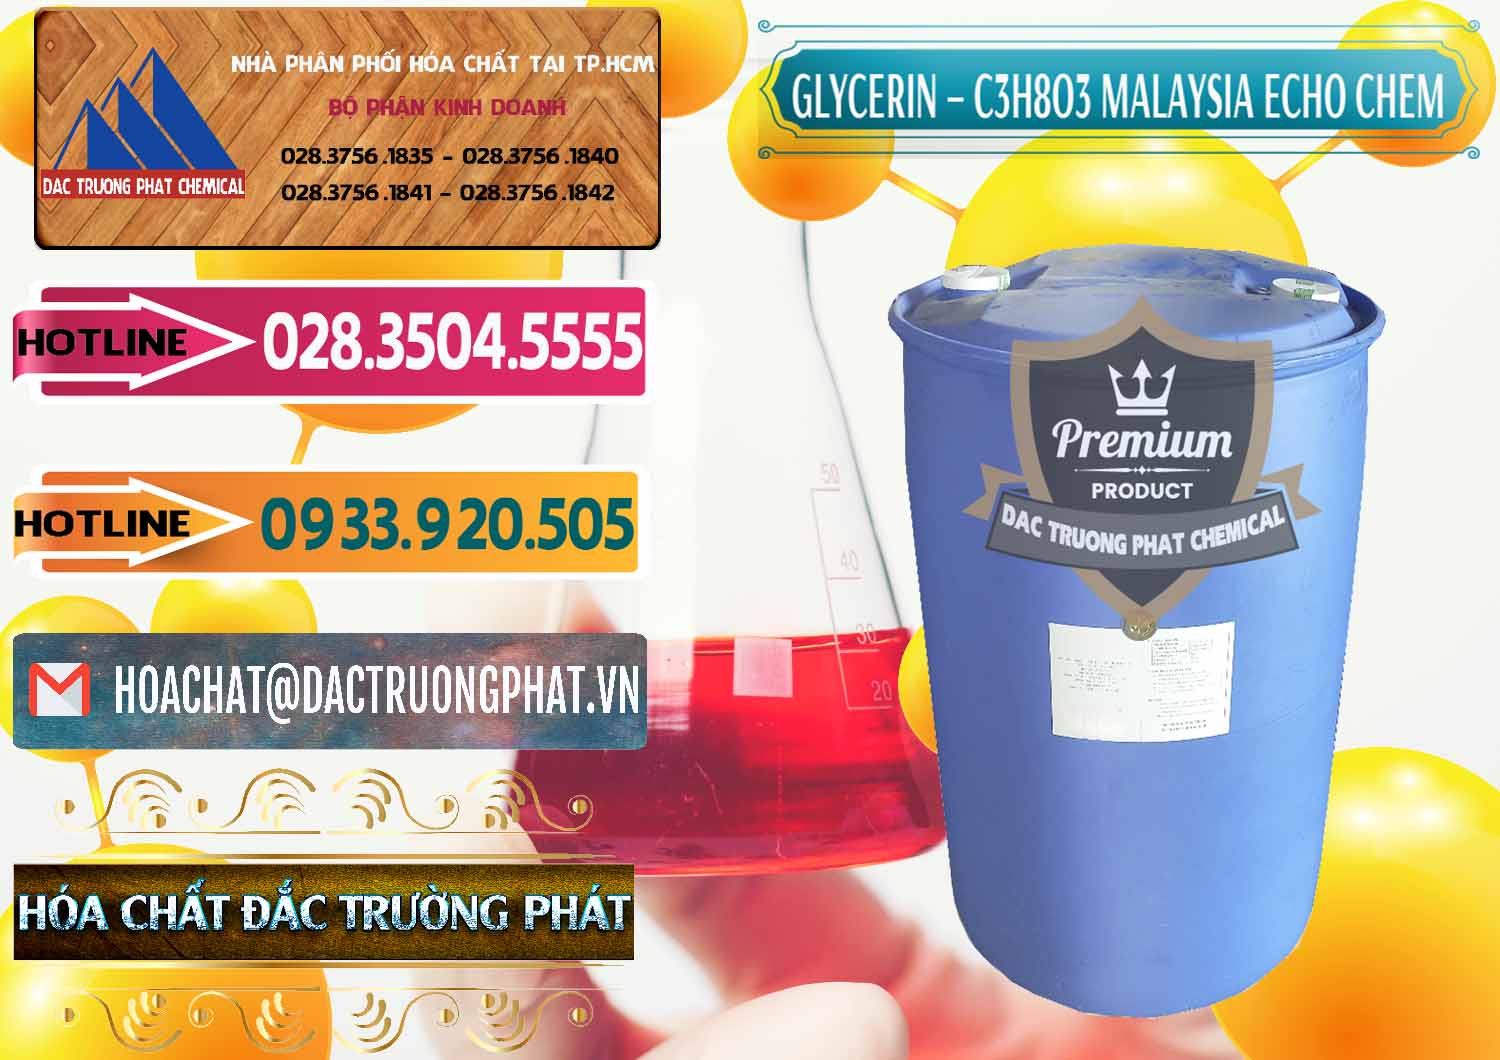 Cty chuyên bán và cung ứng C3H8O3 - Glycerin 99.7% Echo Chem Malaysia - 0273 - Cty bán và phân phối hóa chất tại TP.HCM - dactruongphat.vn